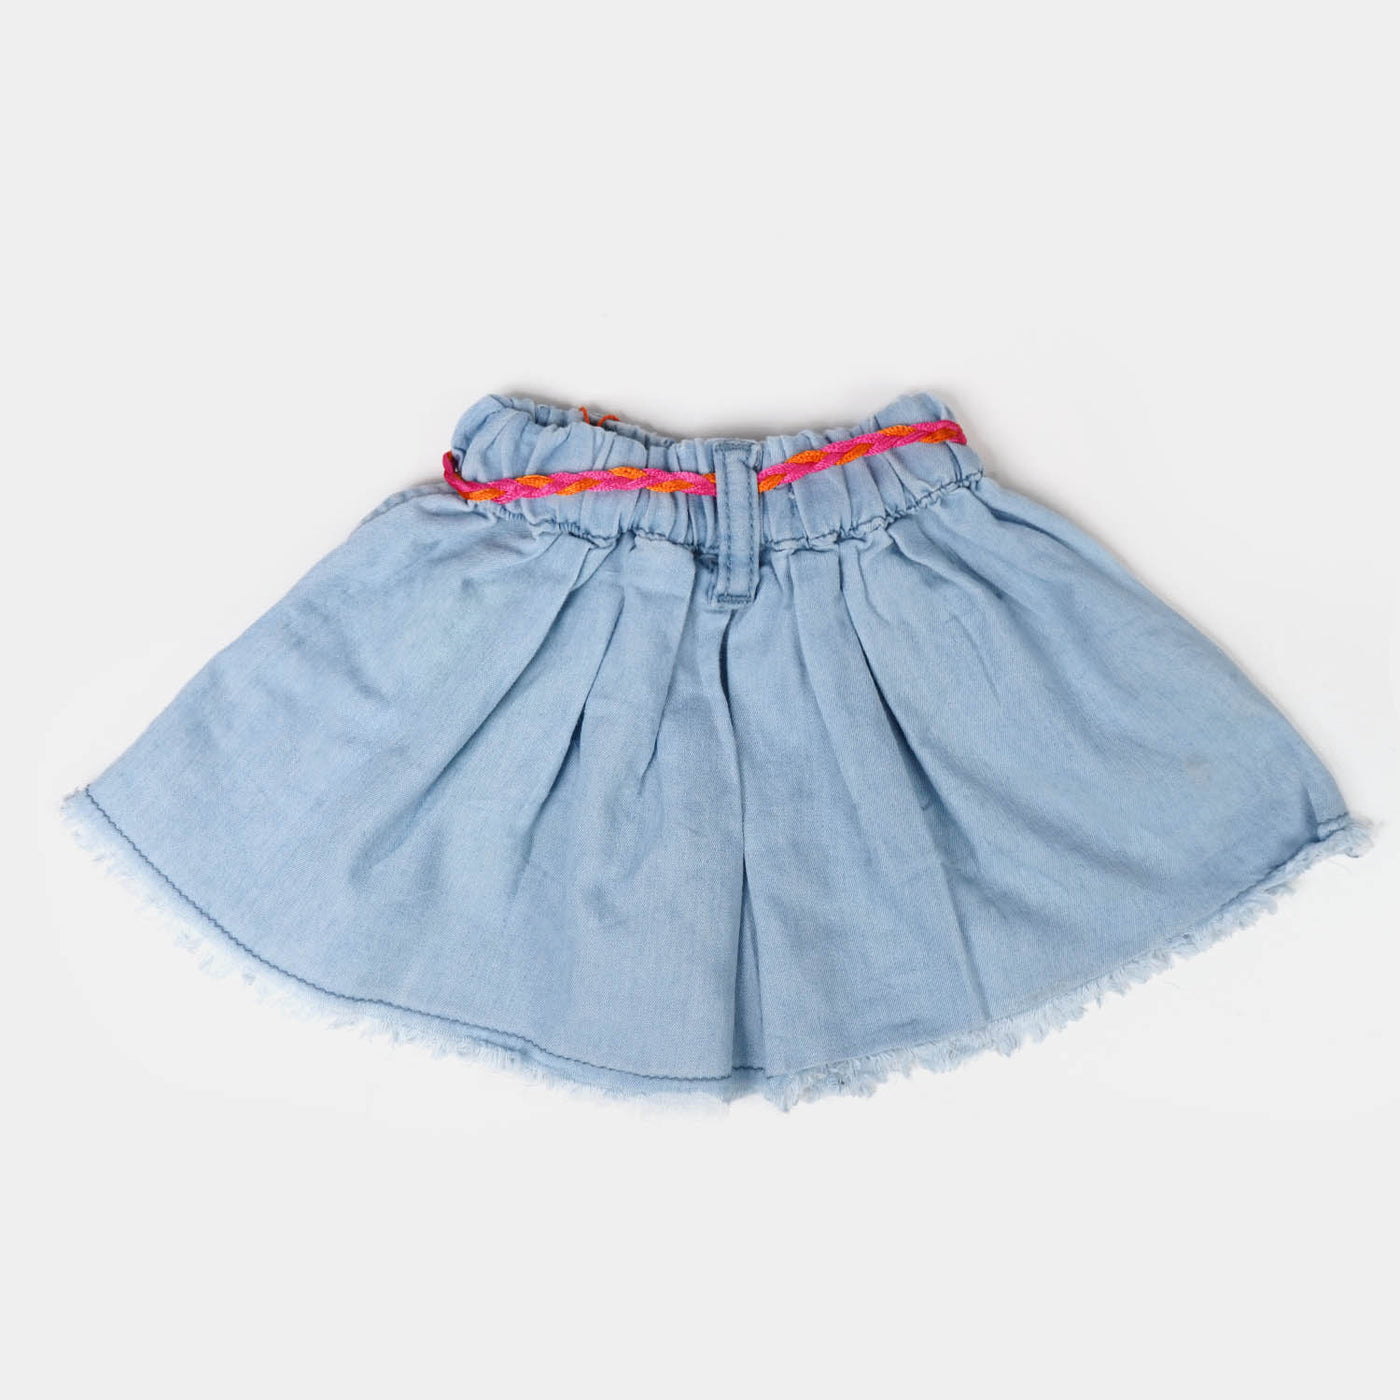 Infant Girls Denim Skirt Flared  - L.Blue